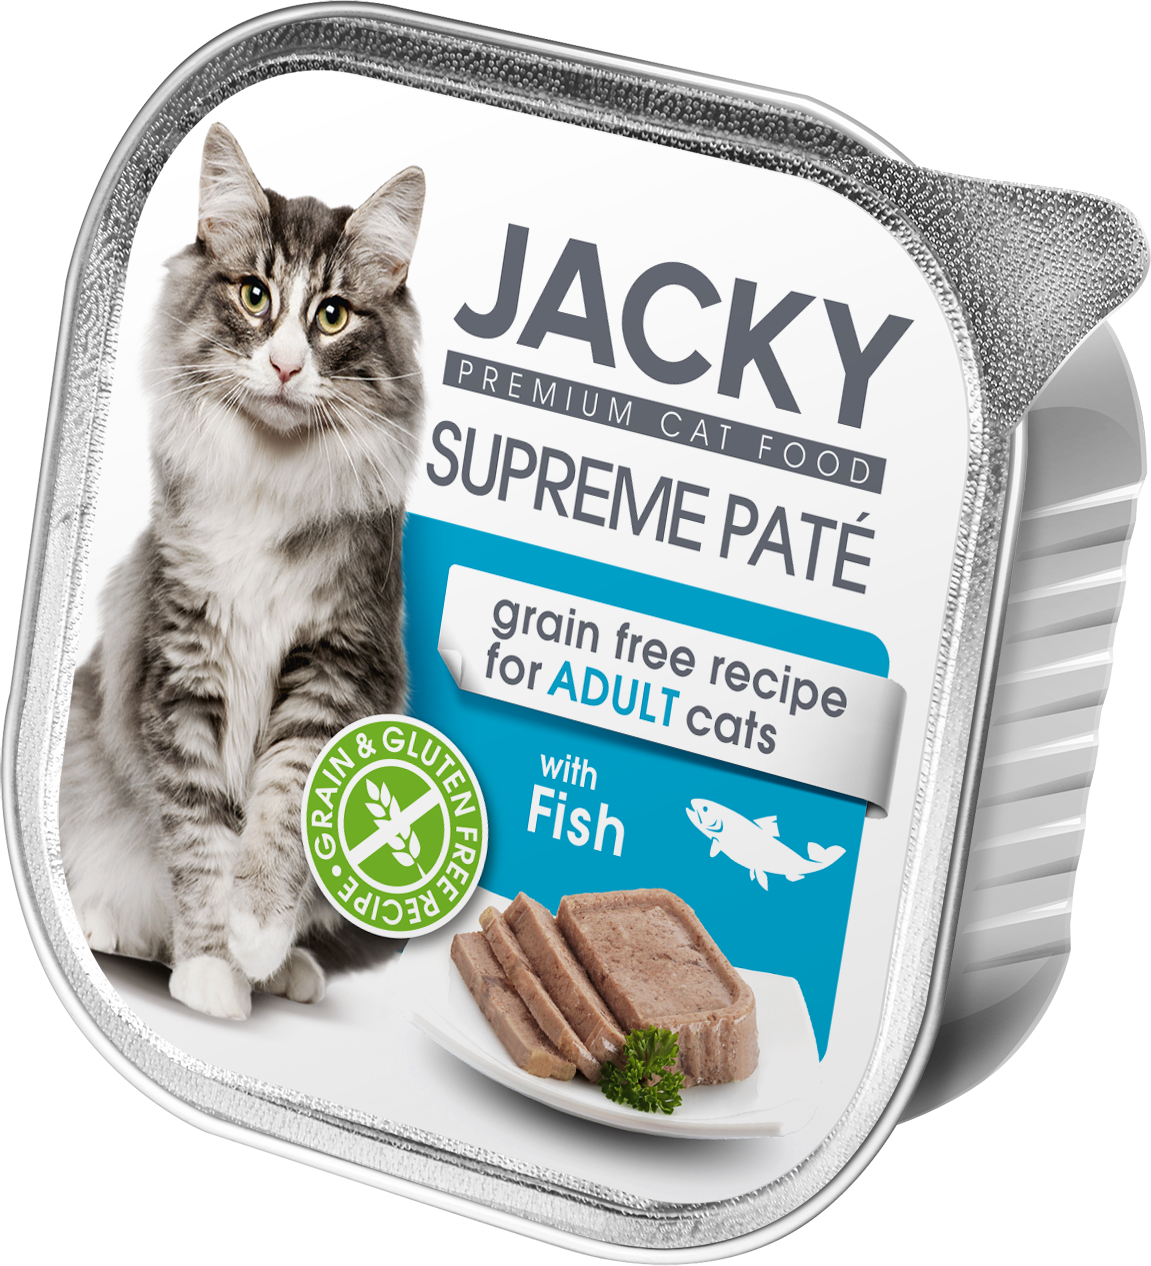 Jacky Supreme Paté pate de pește 100g, conservă pentru pisici